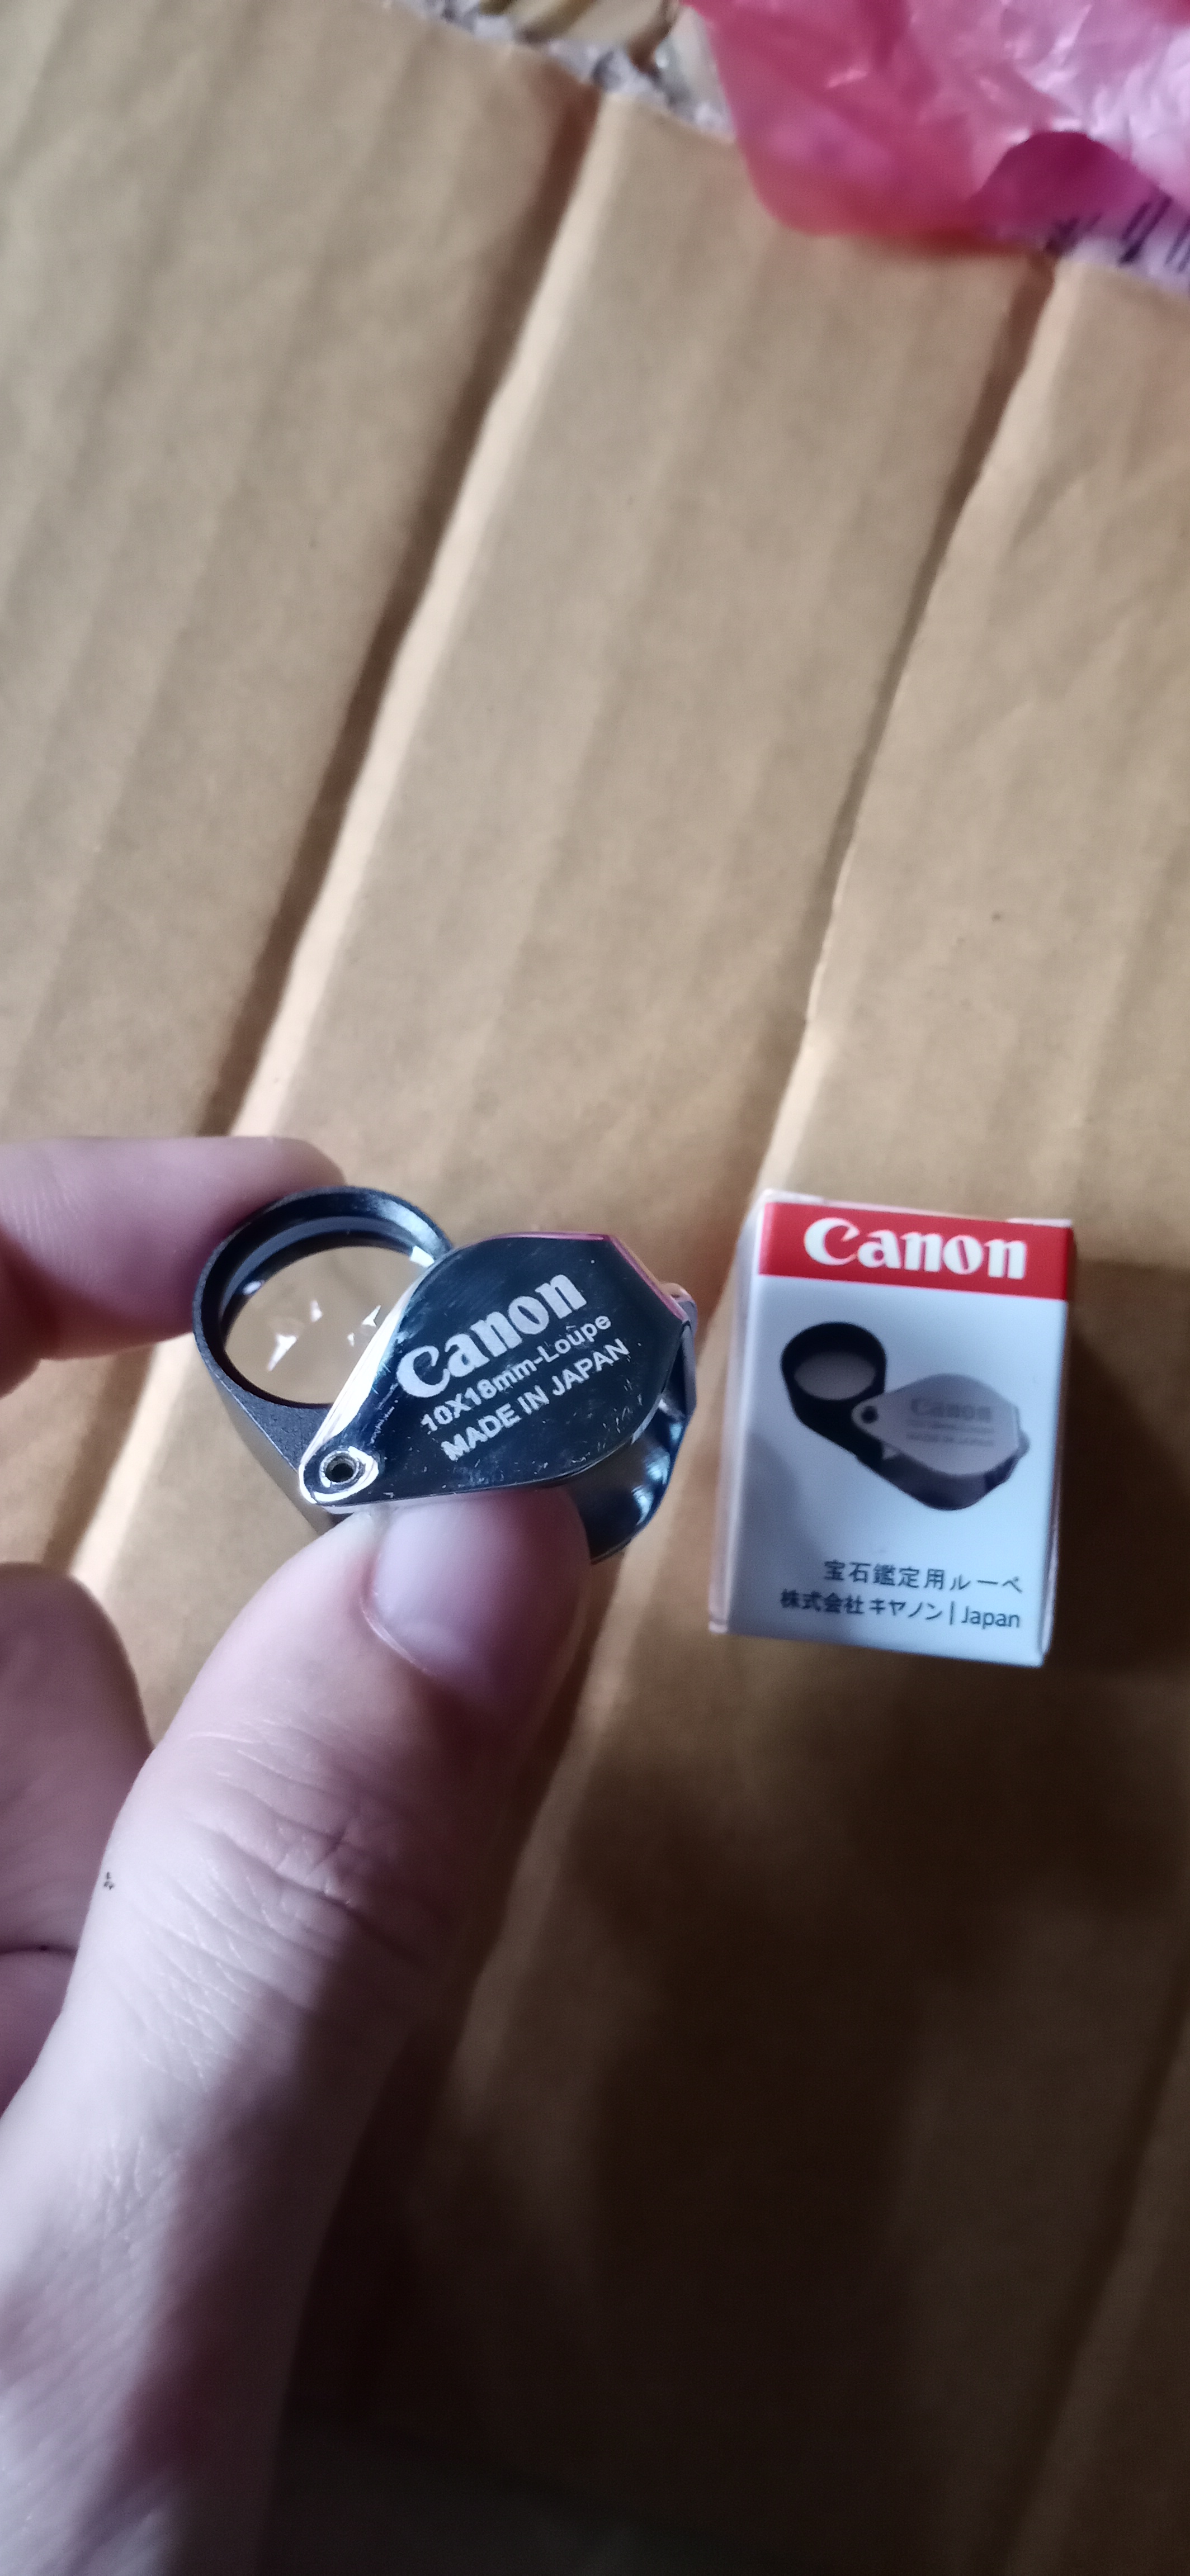 กล้องส่องพระ   จิวเวลรี่   เพชร พลอย   canon  แคนนอน   เลนส์ 2ชั้น    Full HD 10x18 mm Loupe    สีเงิน